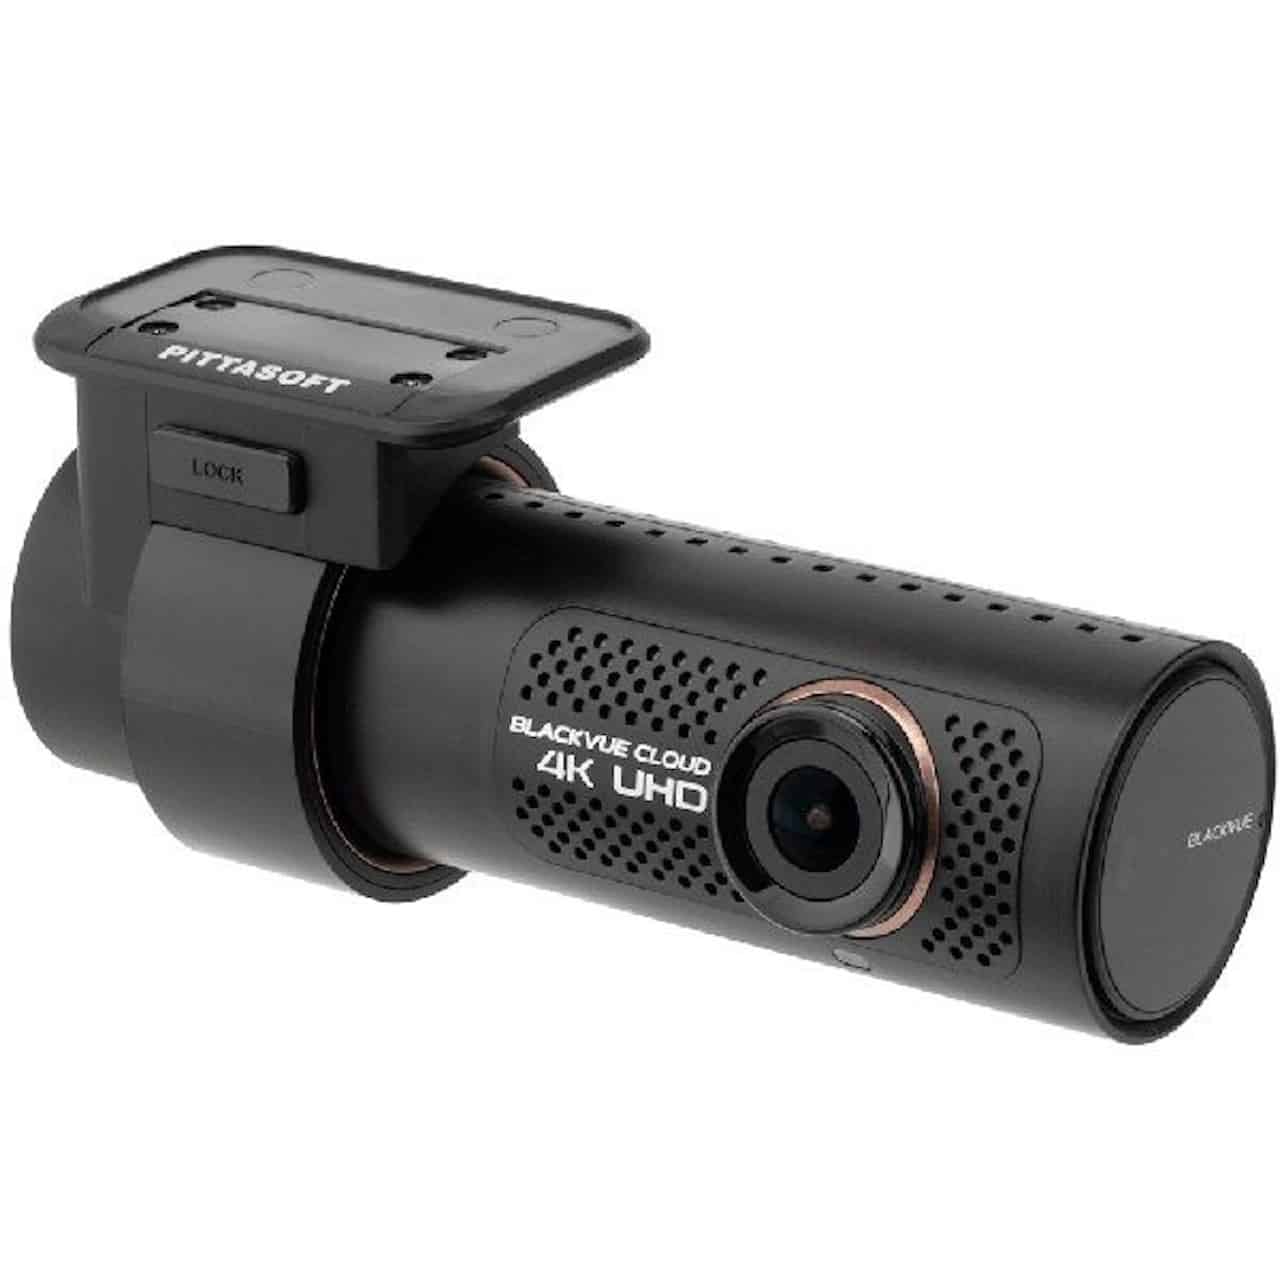 Caméra moto, les meilleures dashcam pour filmer sur la route